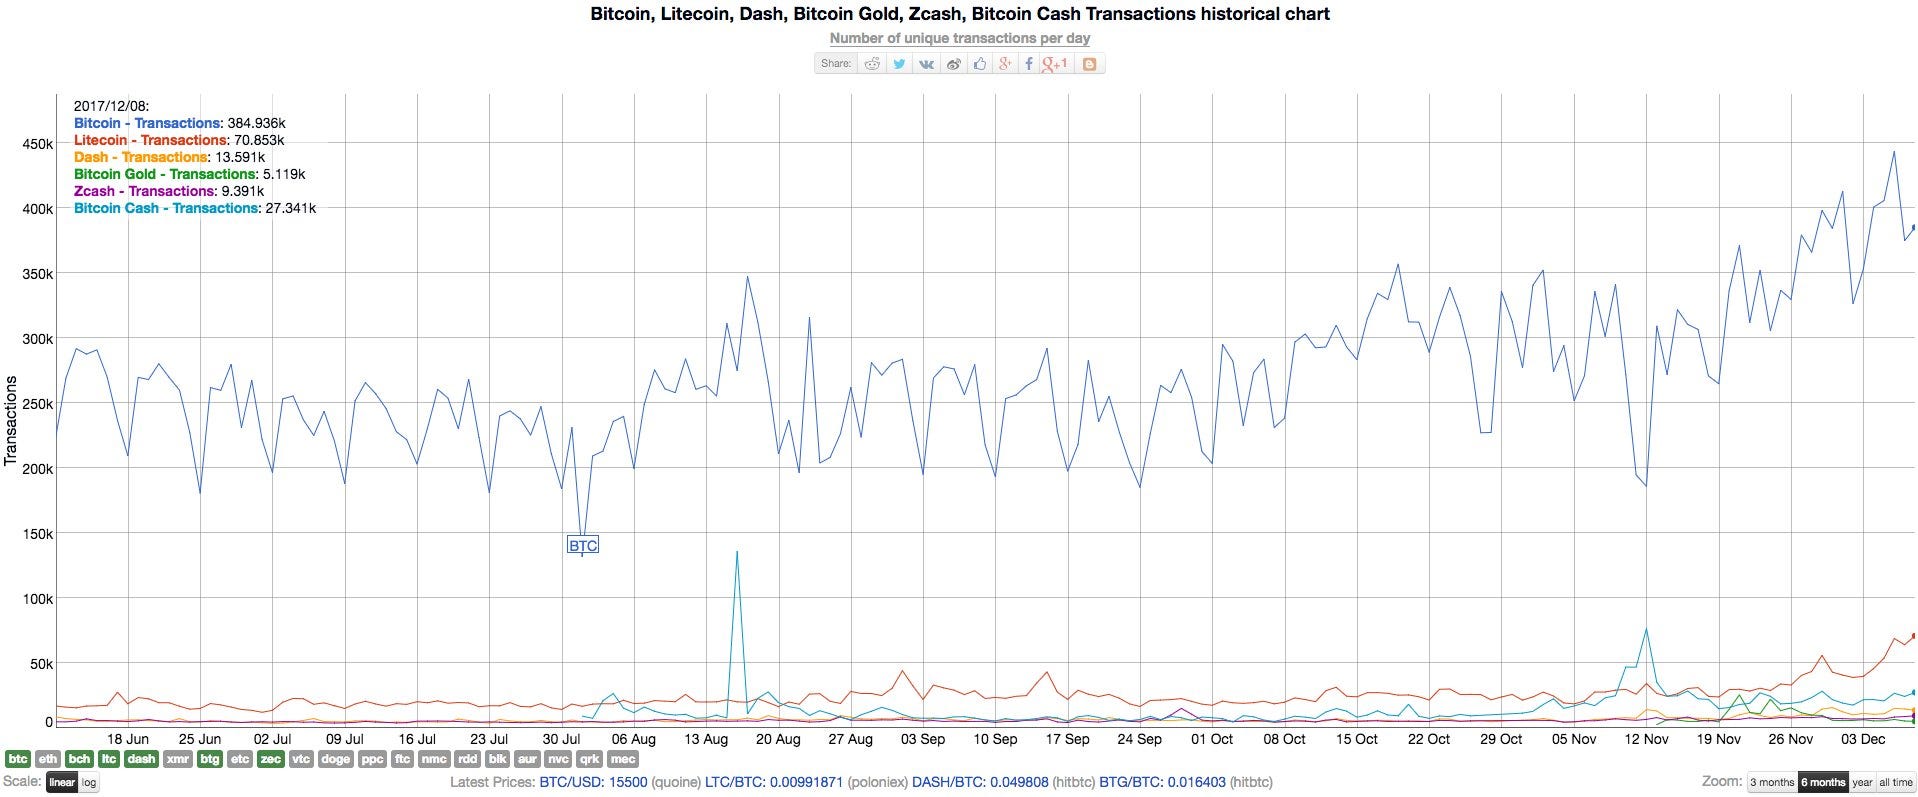 Bitcoin Cash Historical Chart